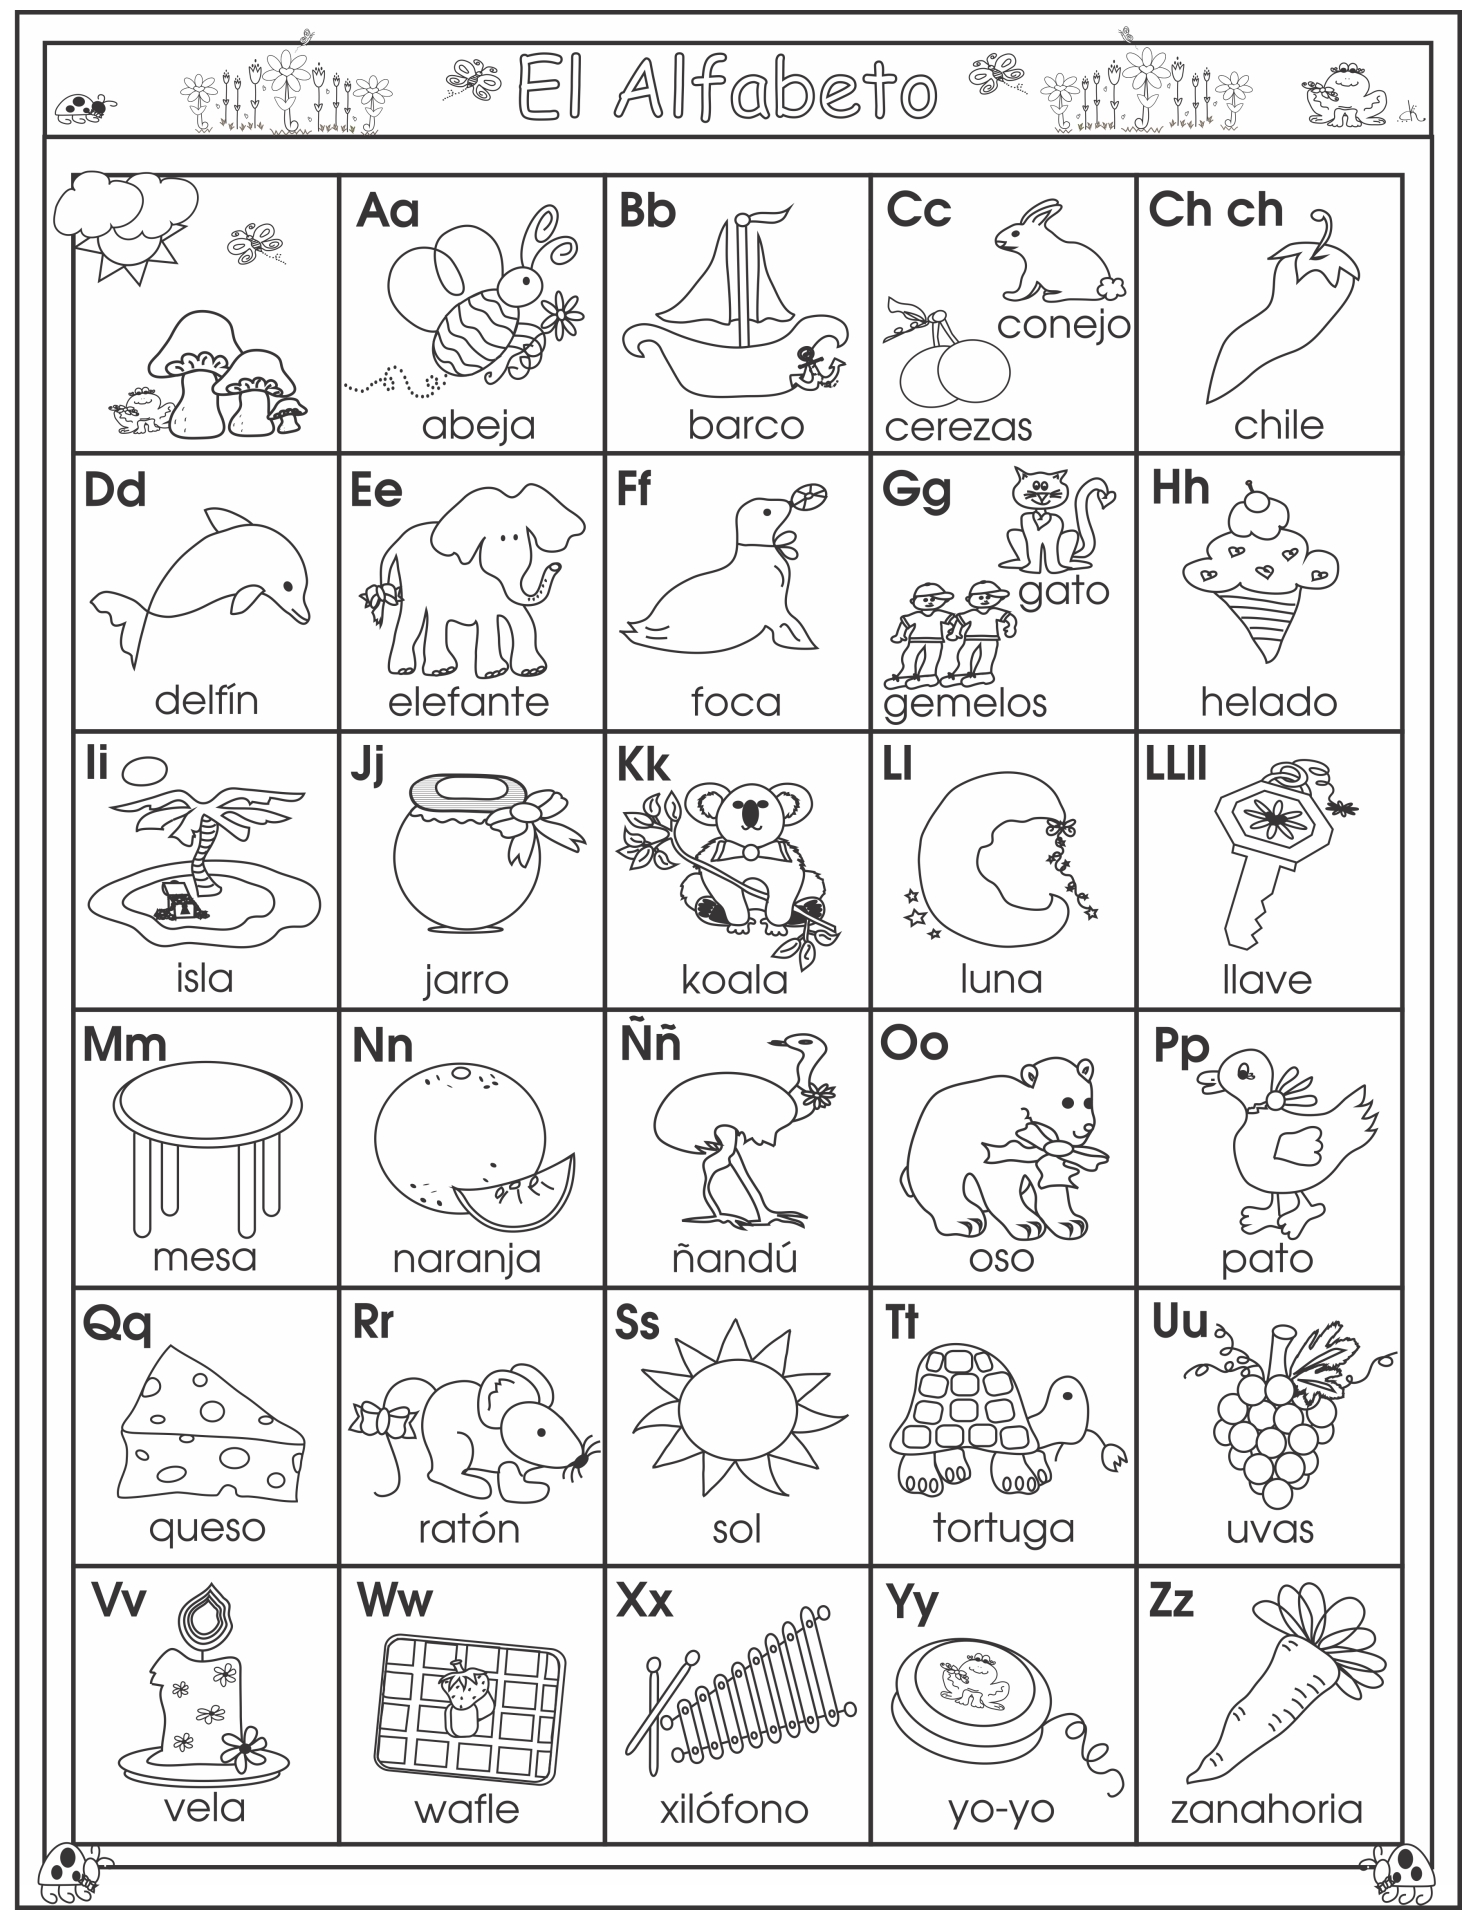 spanish-alphabet-chart-printable-printable-world-holiday